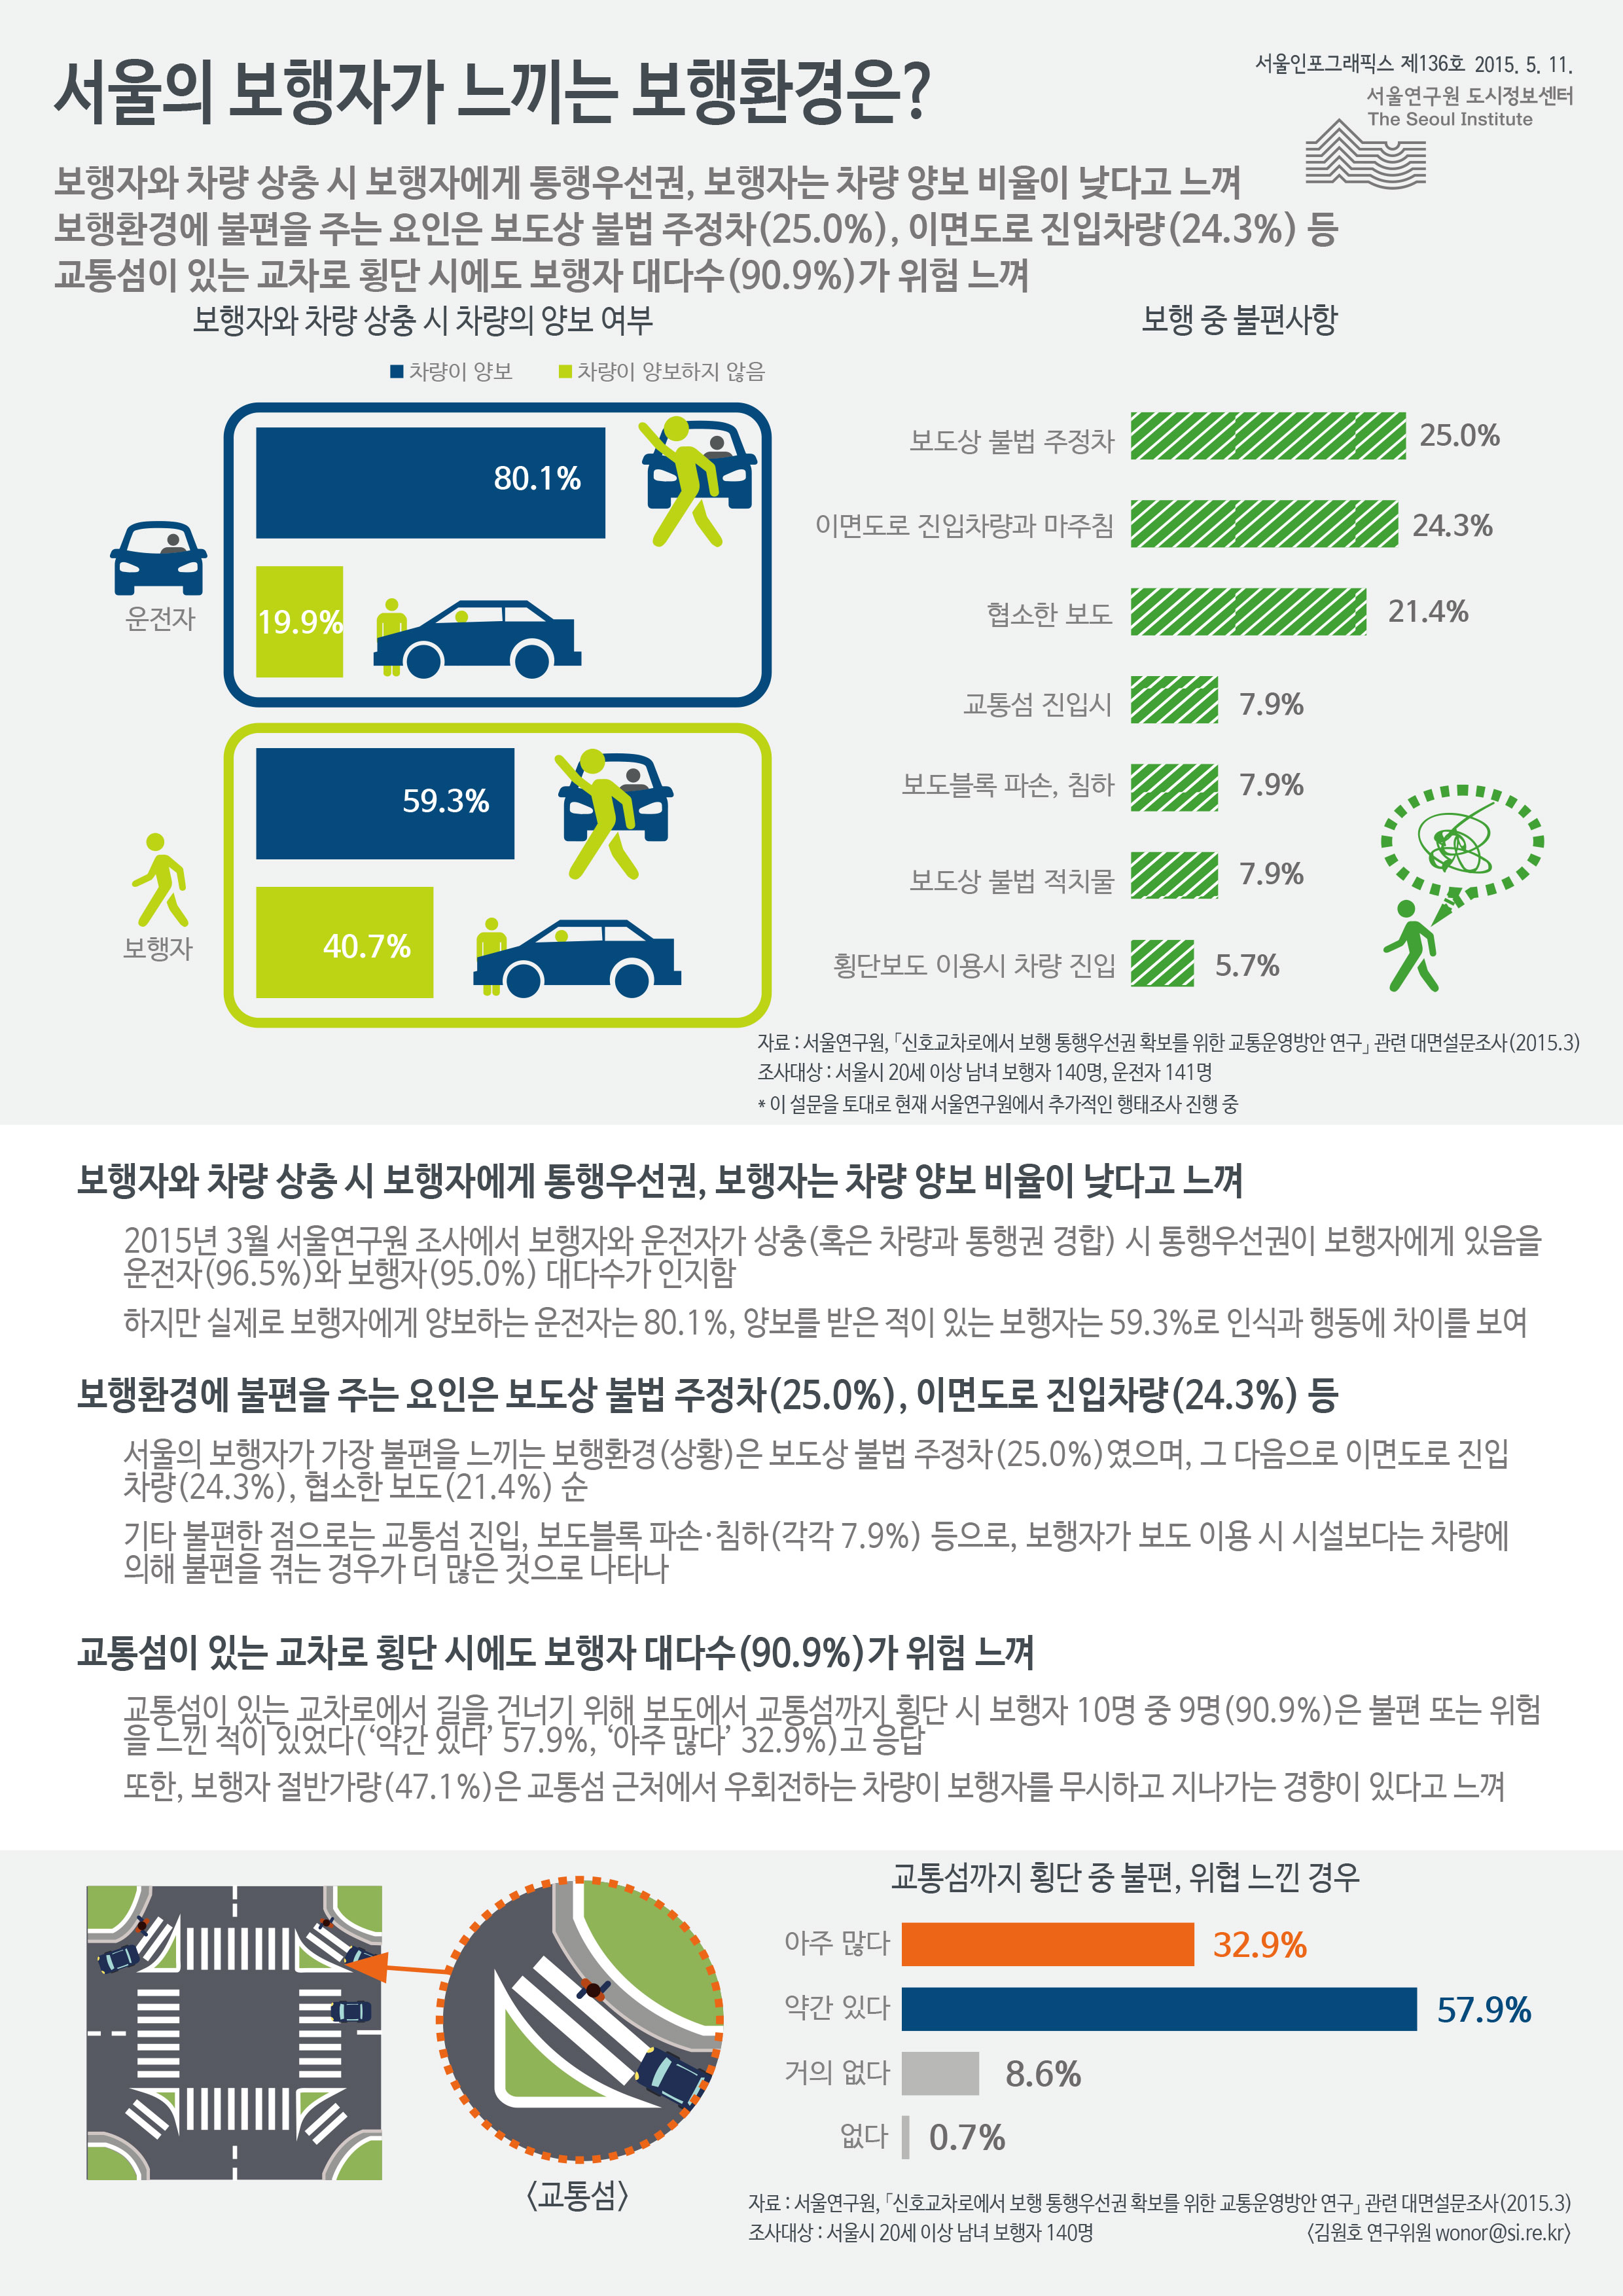 서울의 보행자가 느끼는 보행환경은? 서울인포그래픽스 제136호 2015년 5월 11일 보행자와 차량 상충 시 보행자에게 통행우선권, 보행자는 차량 양보 비율이 낮다고 느낌, 보행환경에 불편을 주는 요인은 보도상 불법 주정차(25.0%), 이면도로 진입차량(24.3%) 등, 교통섬이 있는 교차로 횡단 시에도 보행자 대다수(90.9%)가 위험 느낌으로 정리될 수 있습니다. 인포그래픽으로 제공되는 그래픽은 하단에 표로 자세히 제공됩니다